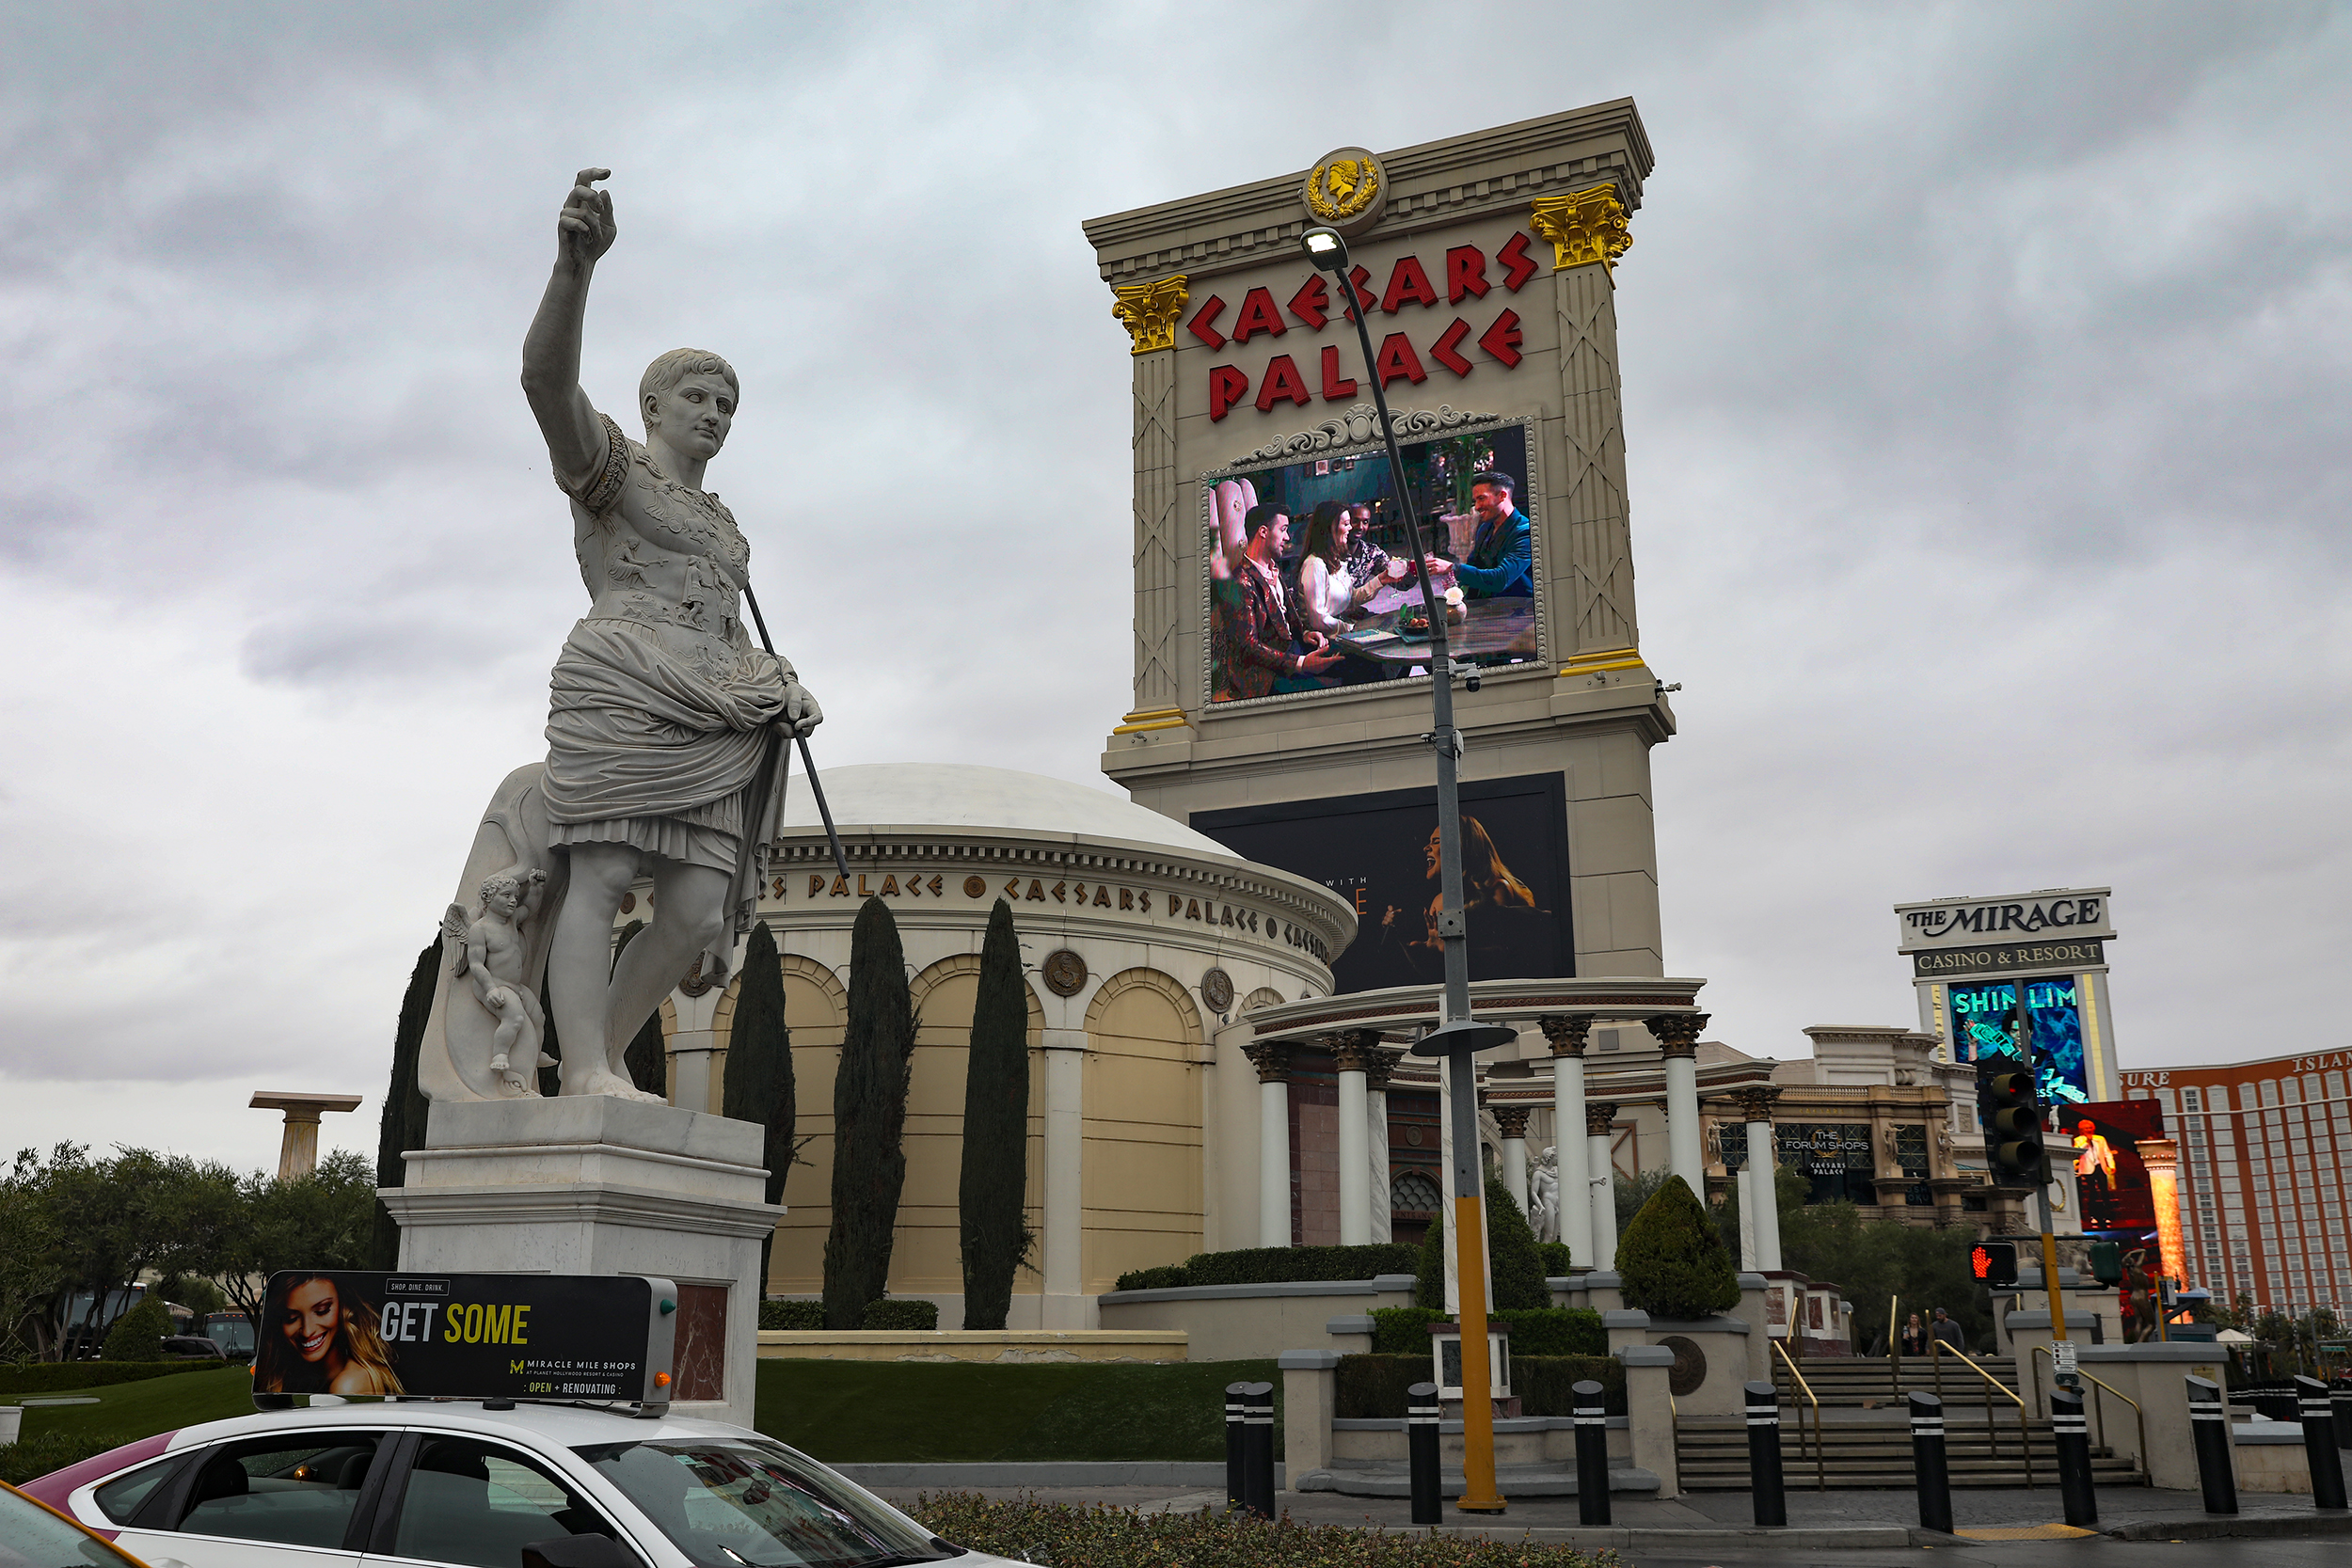 Caesars Palace to demolish rotunda along Las Vegas Strip